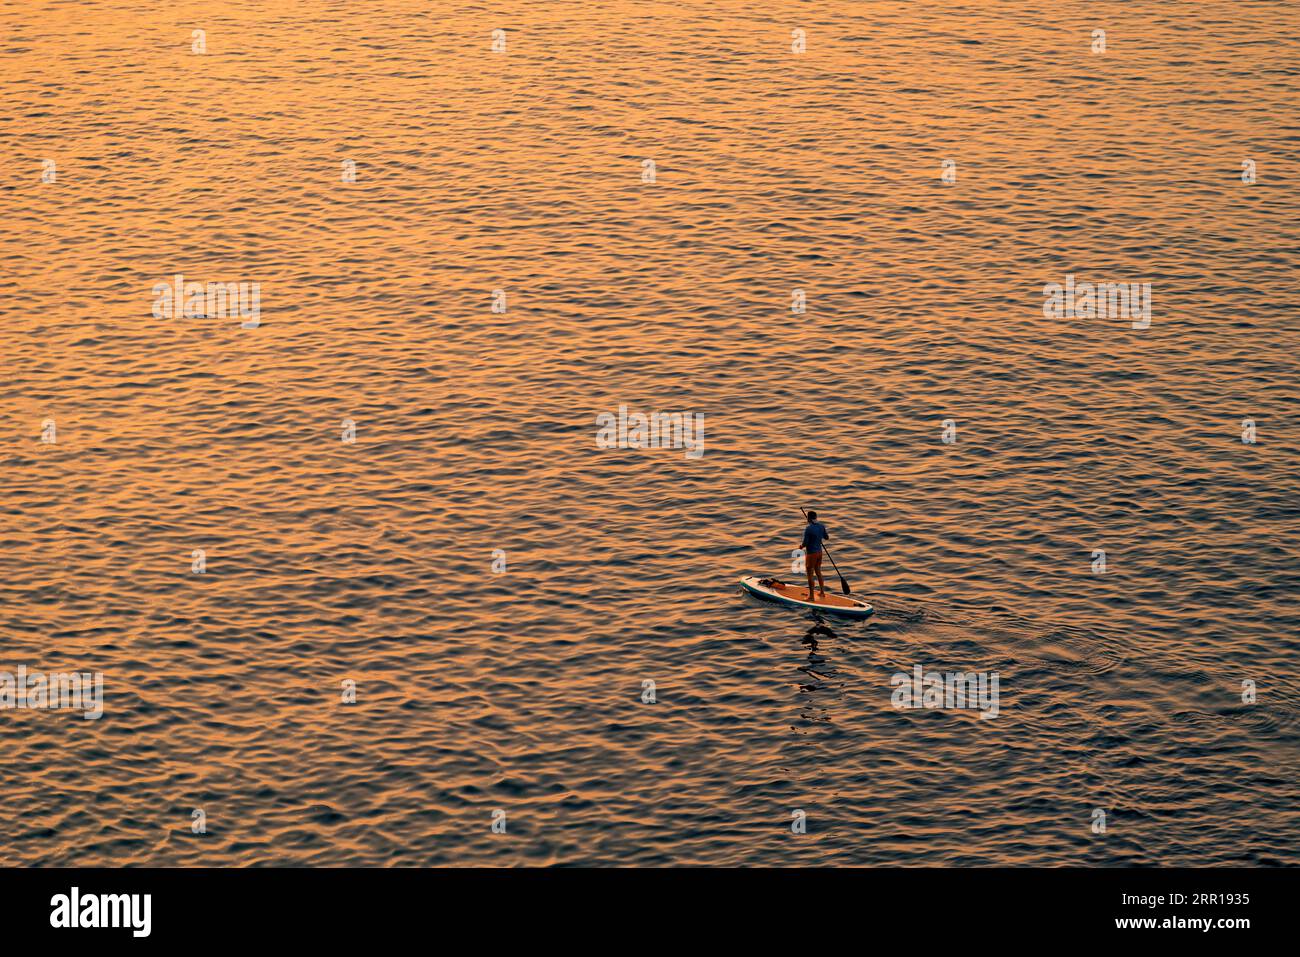 Abenteuerlustige Personen auf einem Stand-Up-Paddle-Board paddeln während eines hellen und lebendigen Sonnenaufgangs Stockfoto